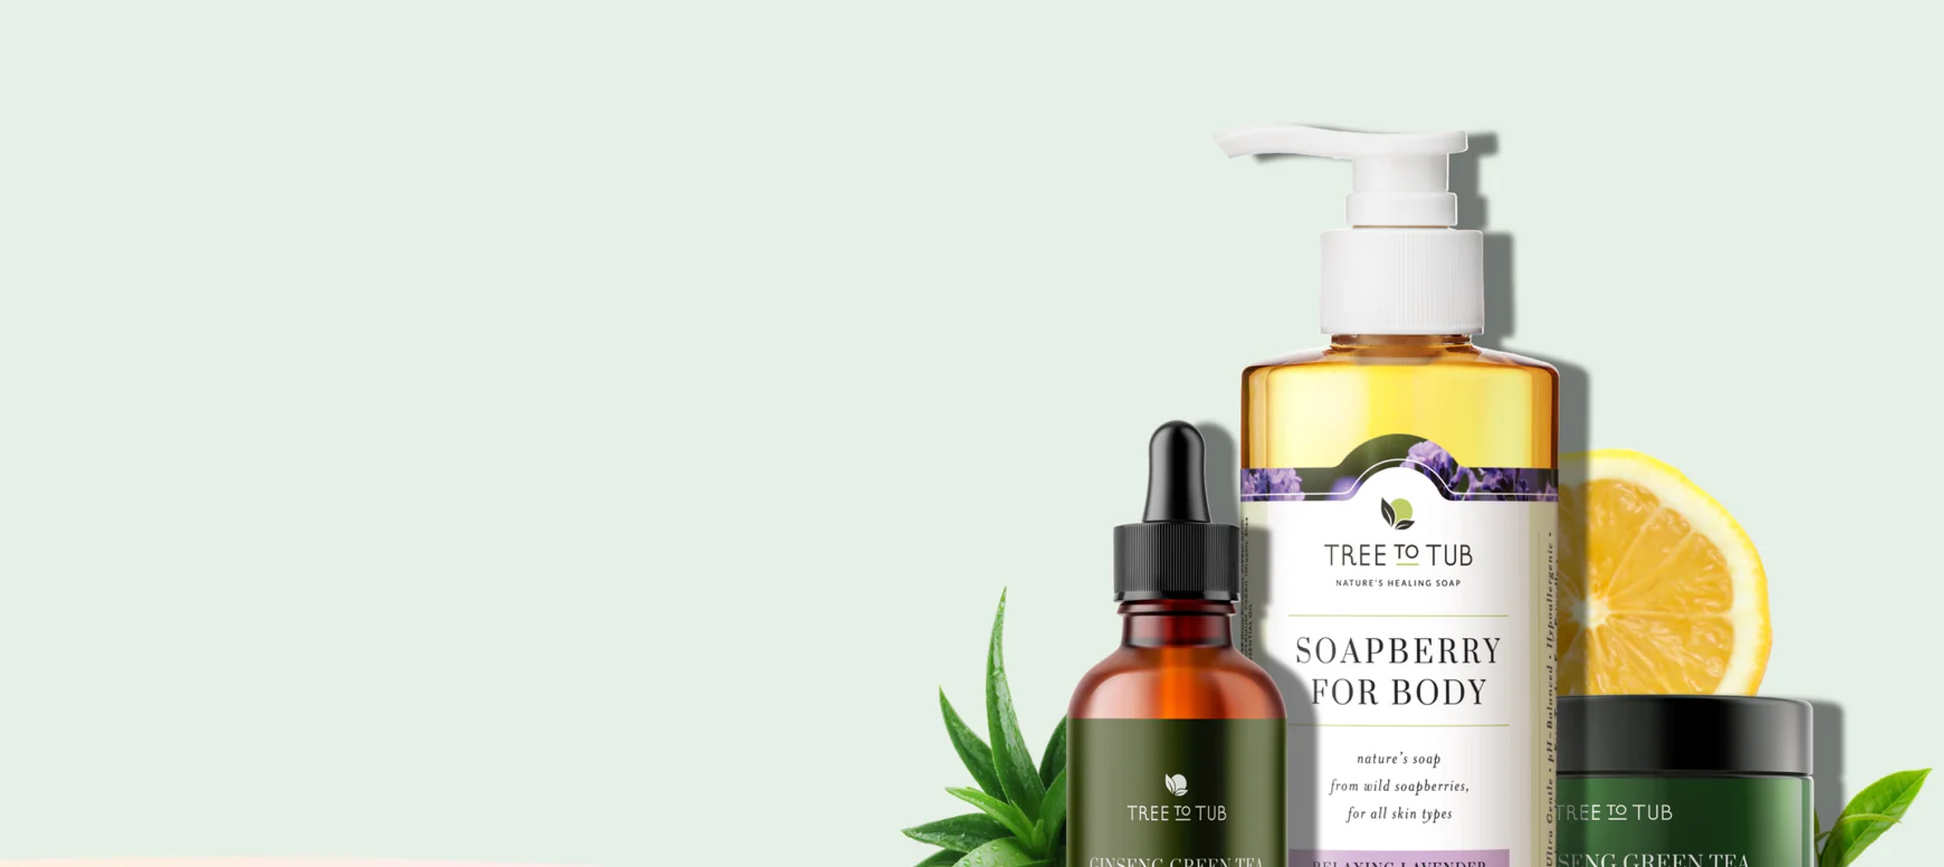 Tres productos para la piel de la marca TreeToTub